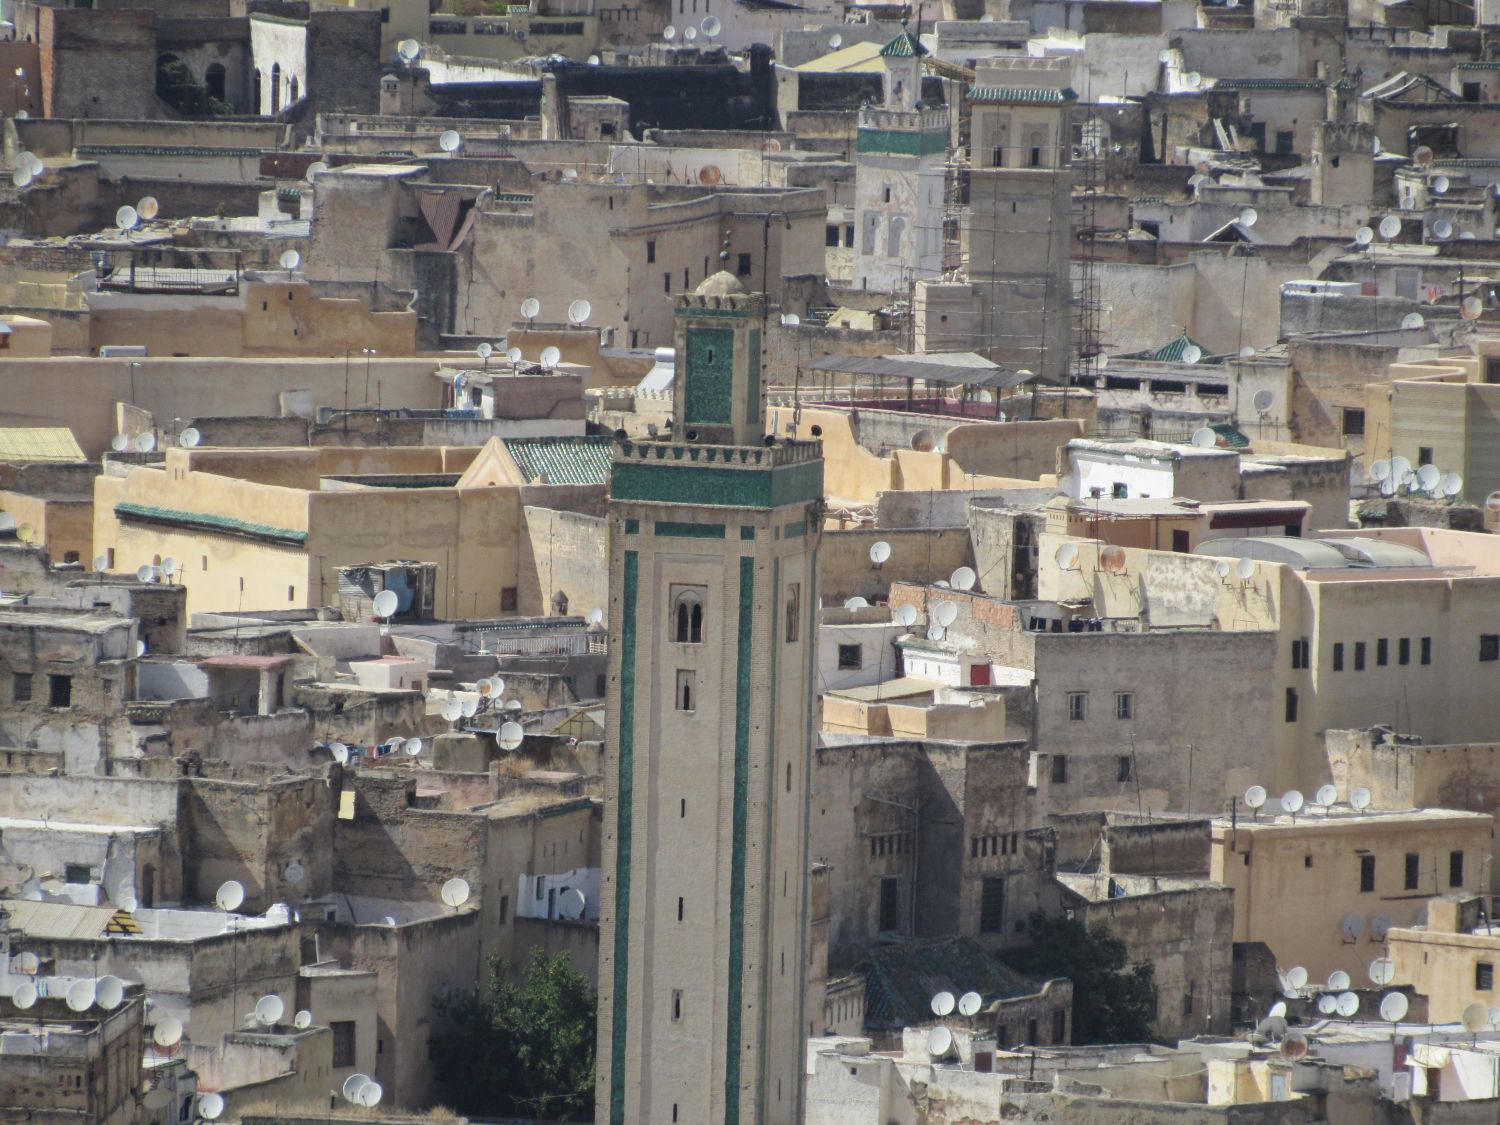 In situ view of the minaret.